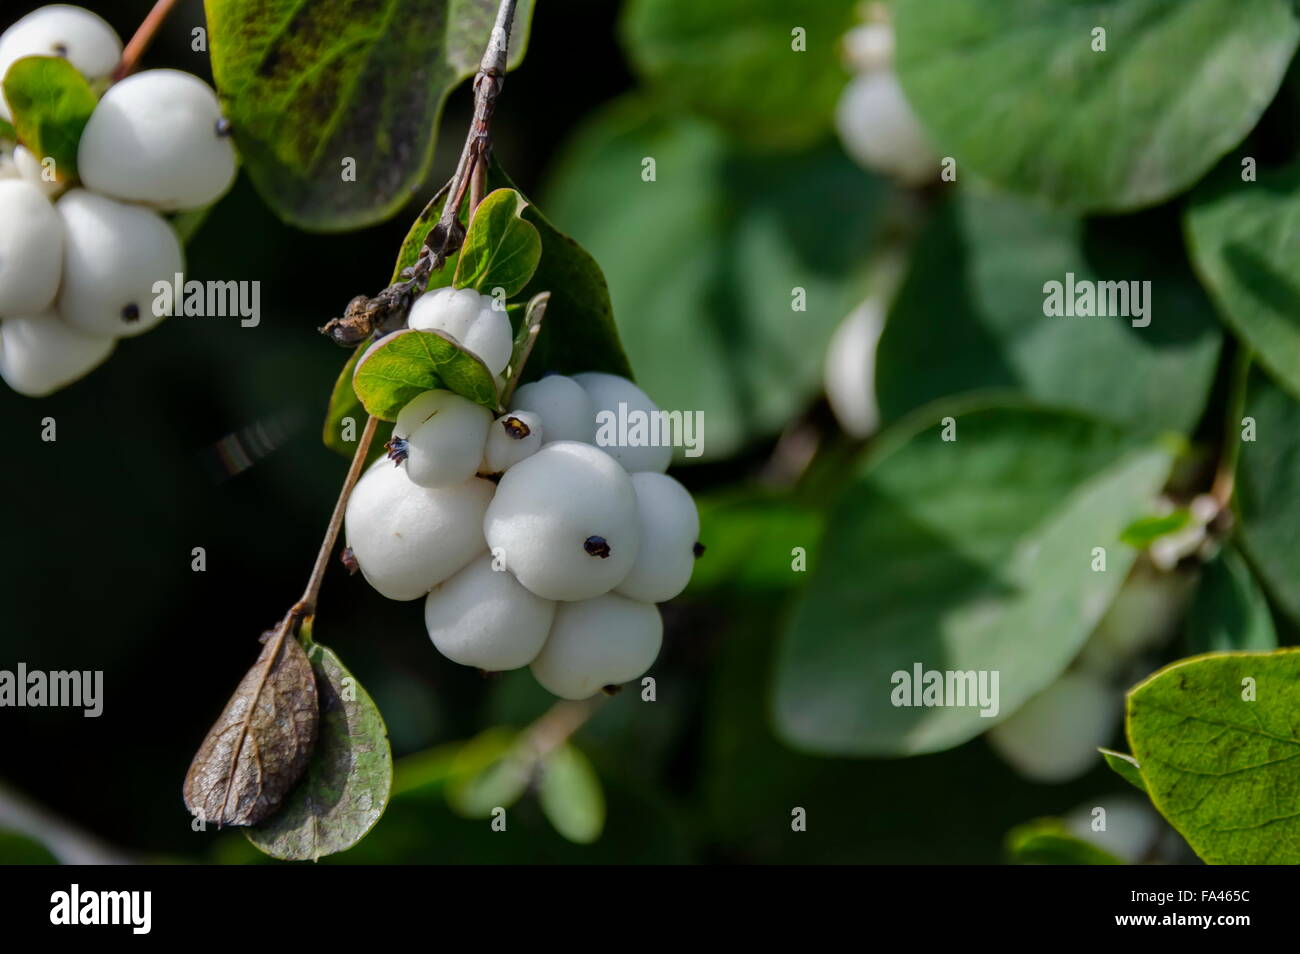 Snowberry albus shrub in park, Bulgaria Stock Photo